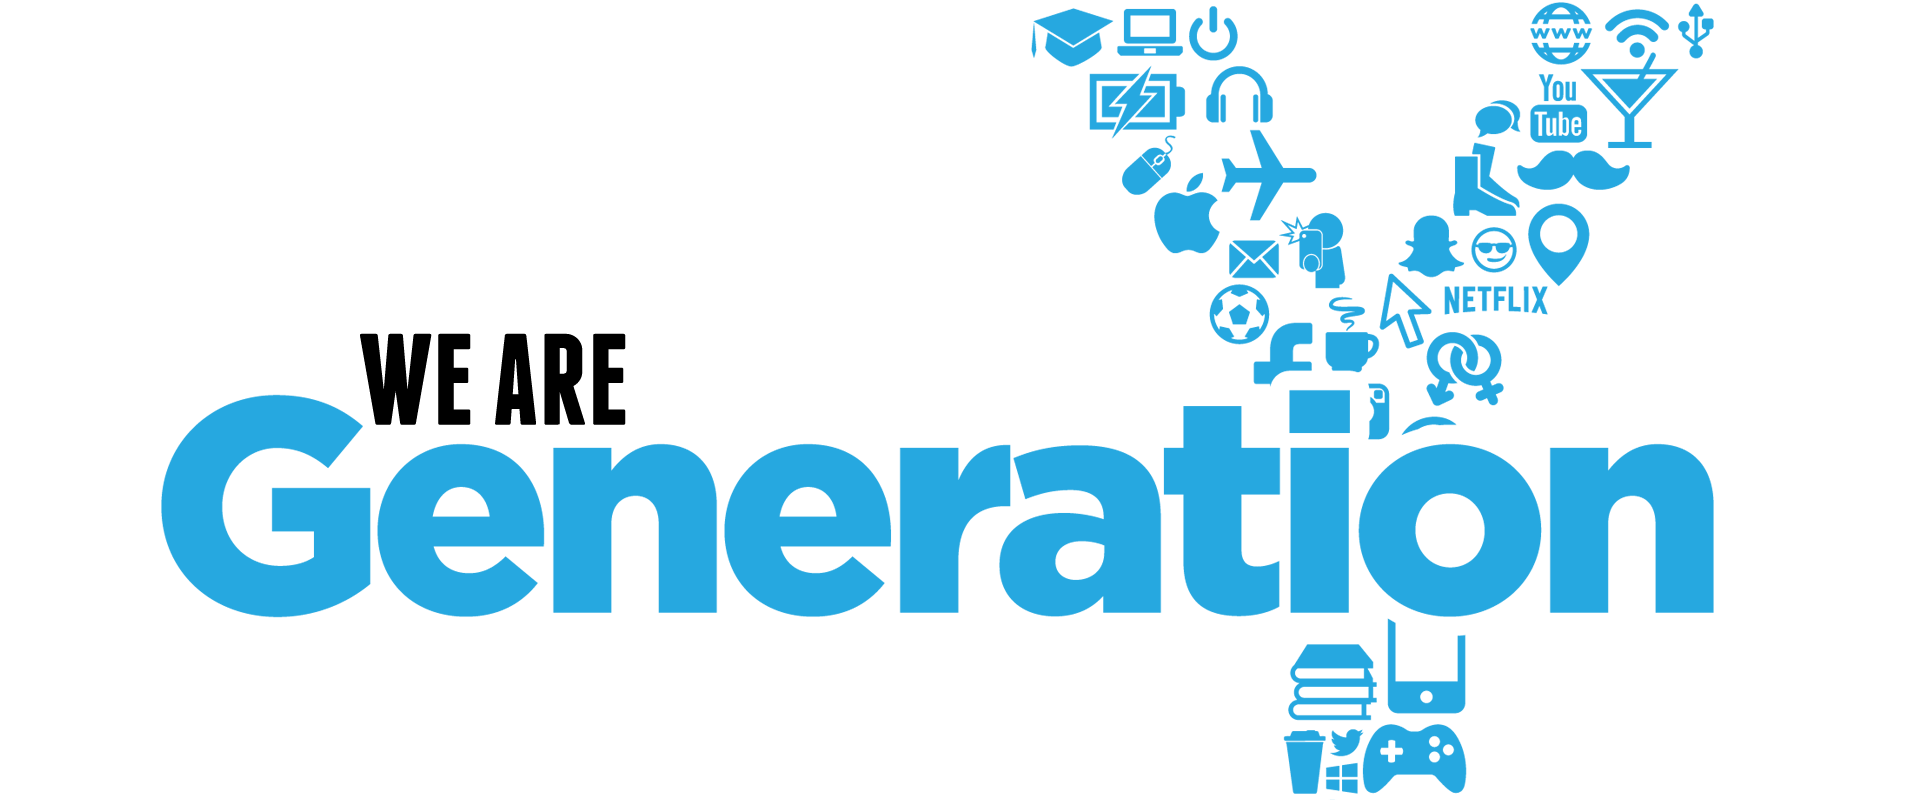 Поколение ис. Поколение y. Generations логотип. Поколение y logo. Поколение x.